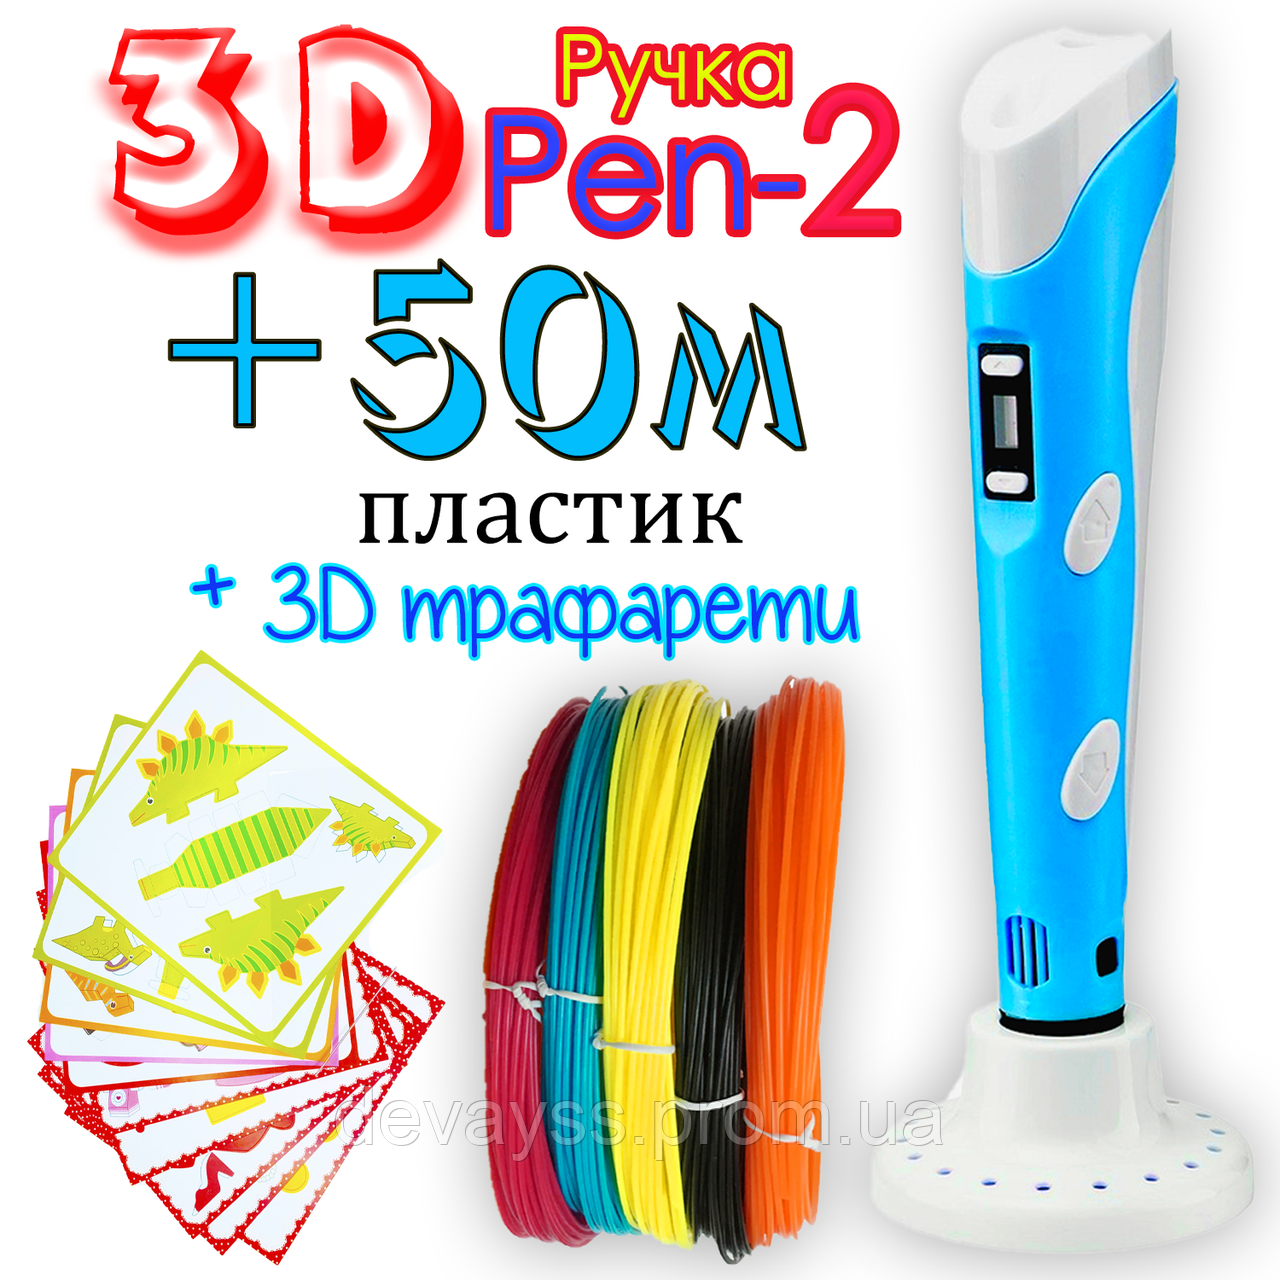 50 метрів пластику + 3Д трафарети у подарунок! 3D Ручка PEN-2 із LCD-дисплеєм Бірюзова для малювання! 3Д ручка